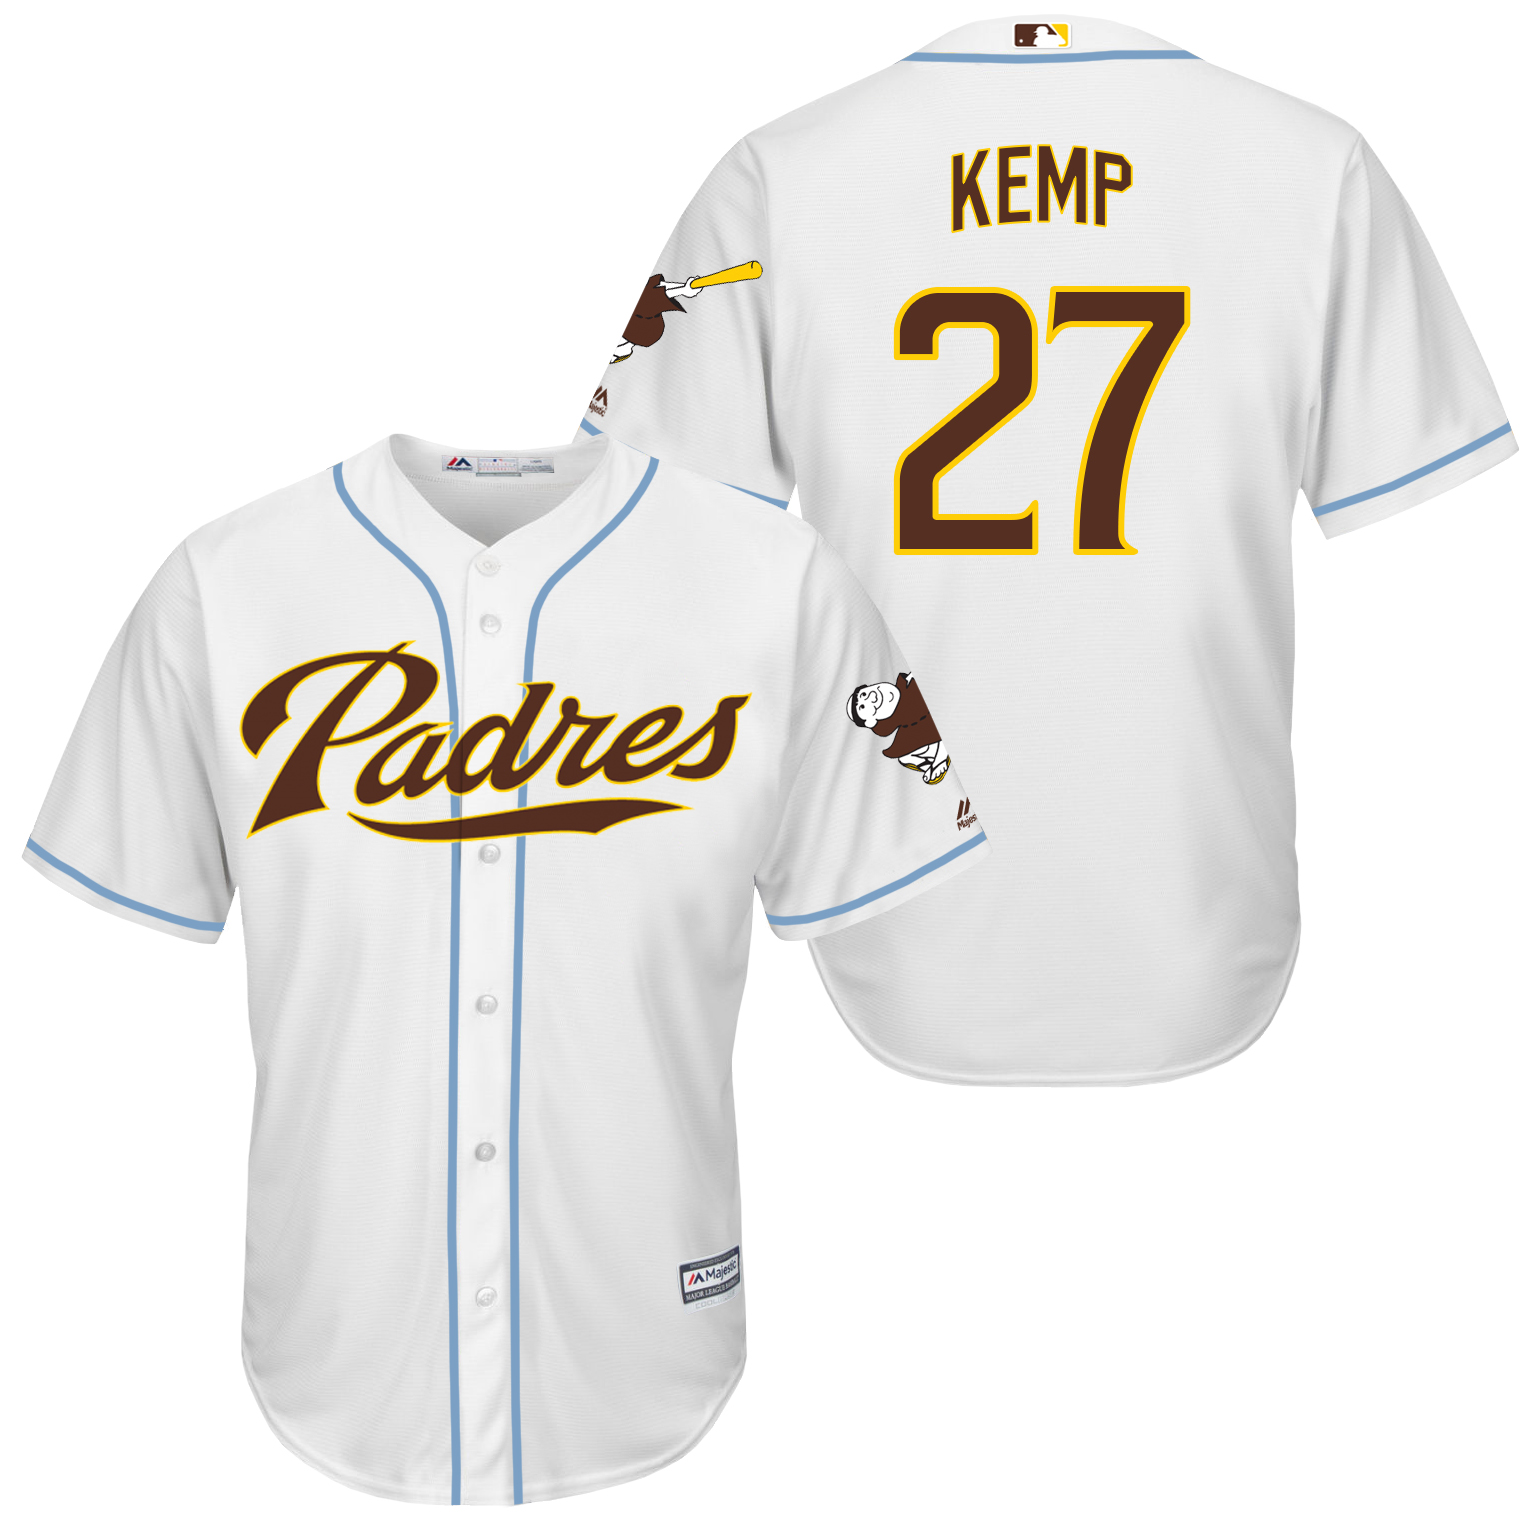 Padres 27 Matt Kemp White New Cool Base Jersey